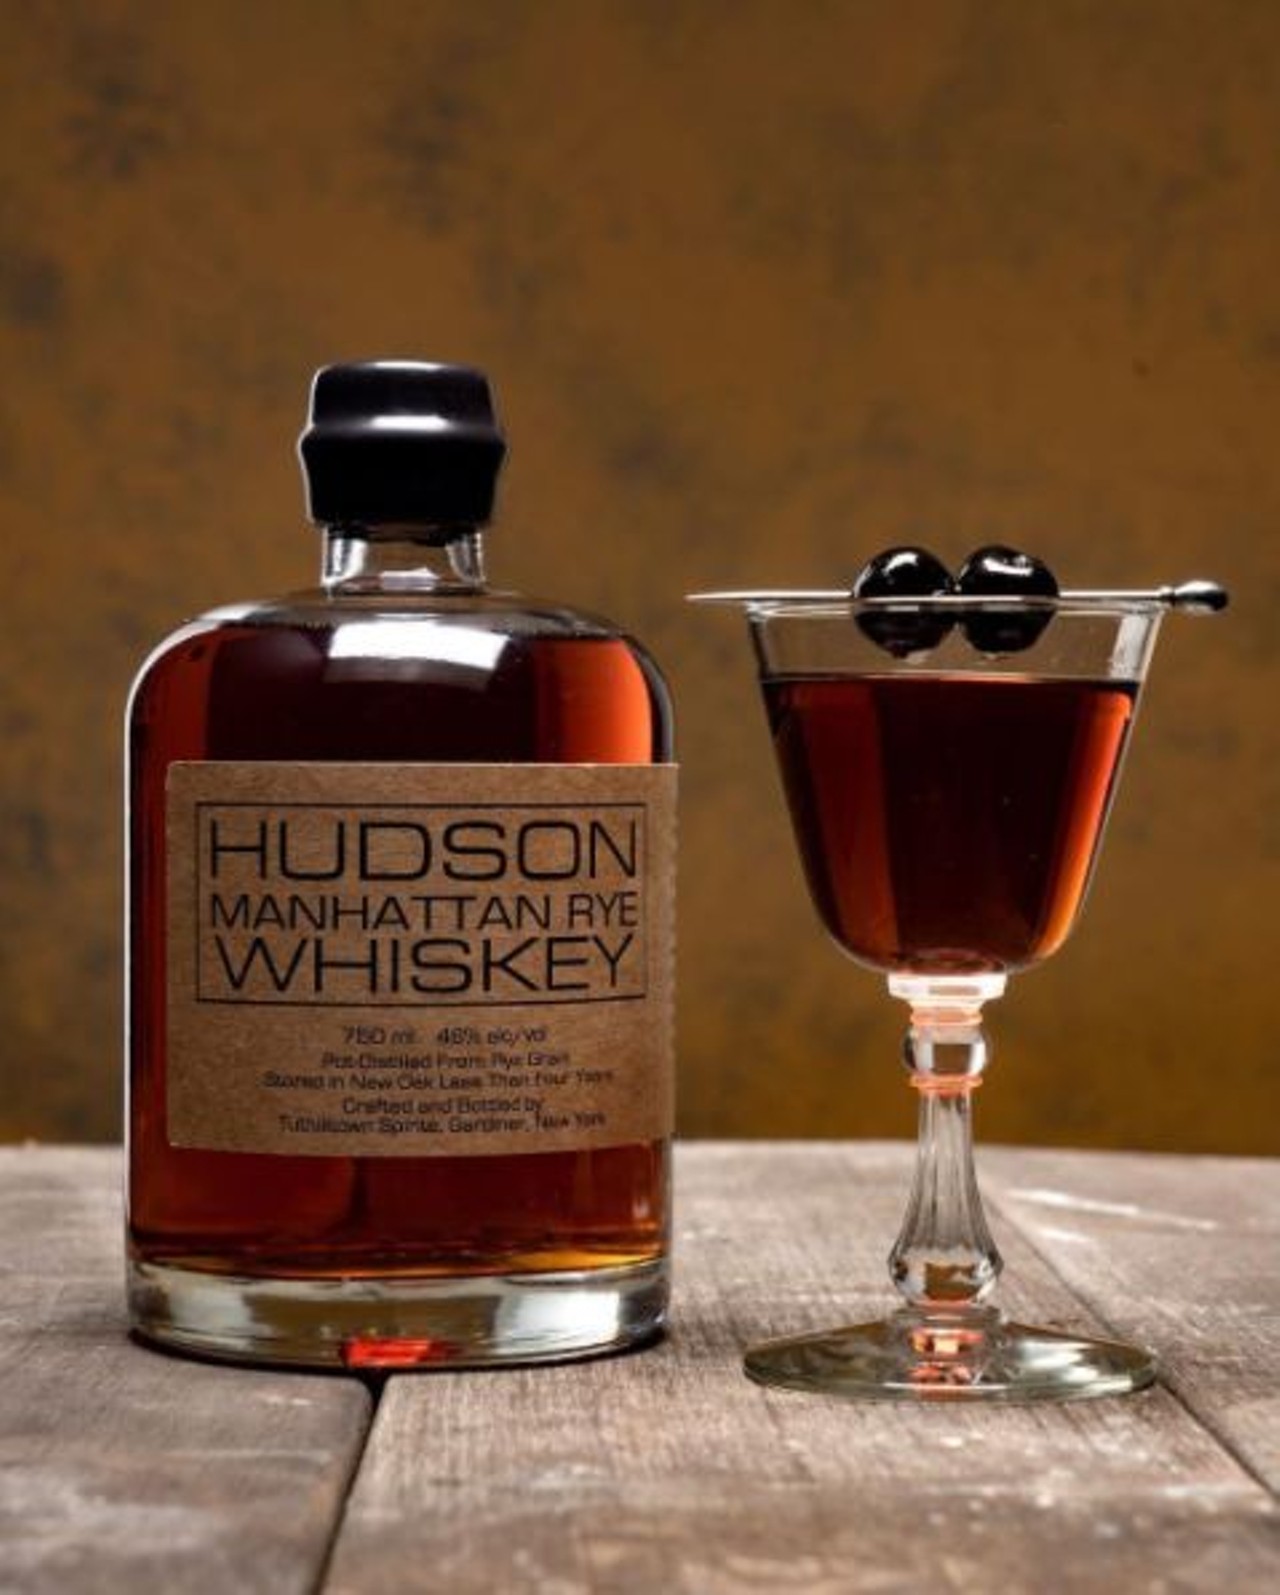 Hudson Whiskey
hudsonwhiskey.com
Photo via Instagram, hudsonwhiskey